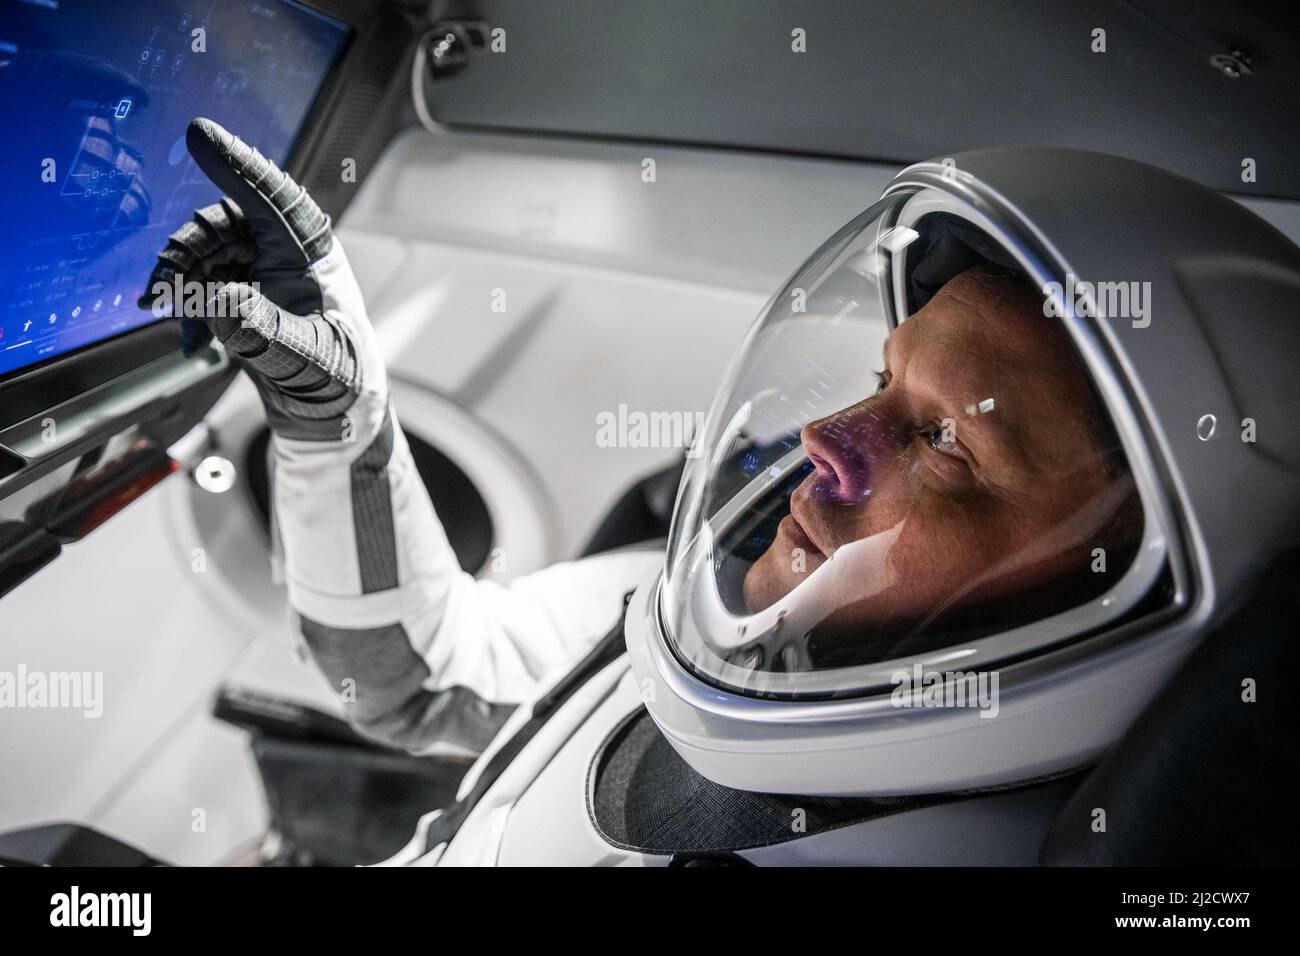 31 marzo 2022, Hawthorne, California, USA: Astronauta della NASA e pilota di SpaceX Crew-4 BOB HINES durante una sessione di addestramento all'interno di un beffardo del veicolo del drago di Crew presso la sede SpaceX. Un paio di conferenze stampa oggi 31st marzo presso il Johnson Space Center della NASA evidenzieranno la prossima missione SpaceX Crew-4 dell'agenzia. La missione sarà l'ultimo volo di rotazione dell'equipaggio della NASA che coinvolgerà un veicolo spaziale commerciale statunitense che trasporta astronauti. Il lancio del razzo Falcon 9 che porta la capsula di Crew Dragon è previsto per aprile a partire dal Launch Complex 39A al Kennedy Space Center. NELLA FOTO: Febbraio 2022. (Credi Foto Stock